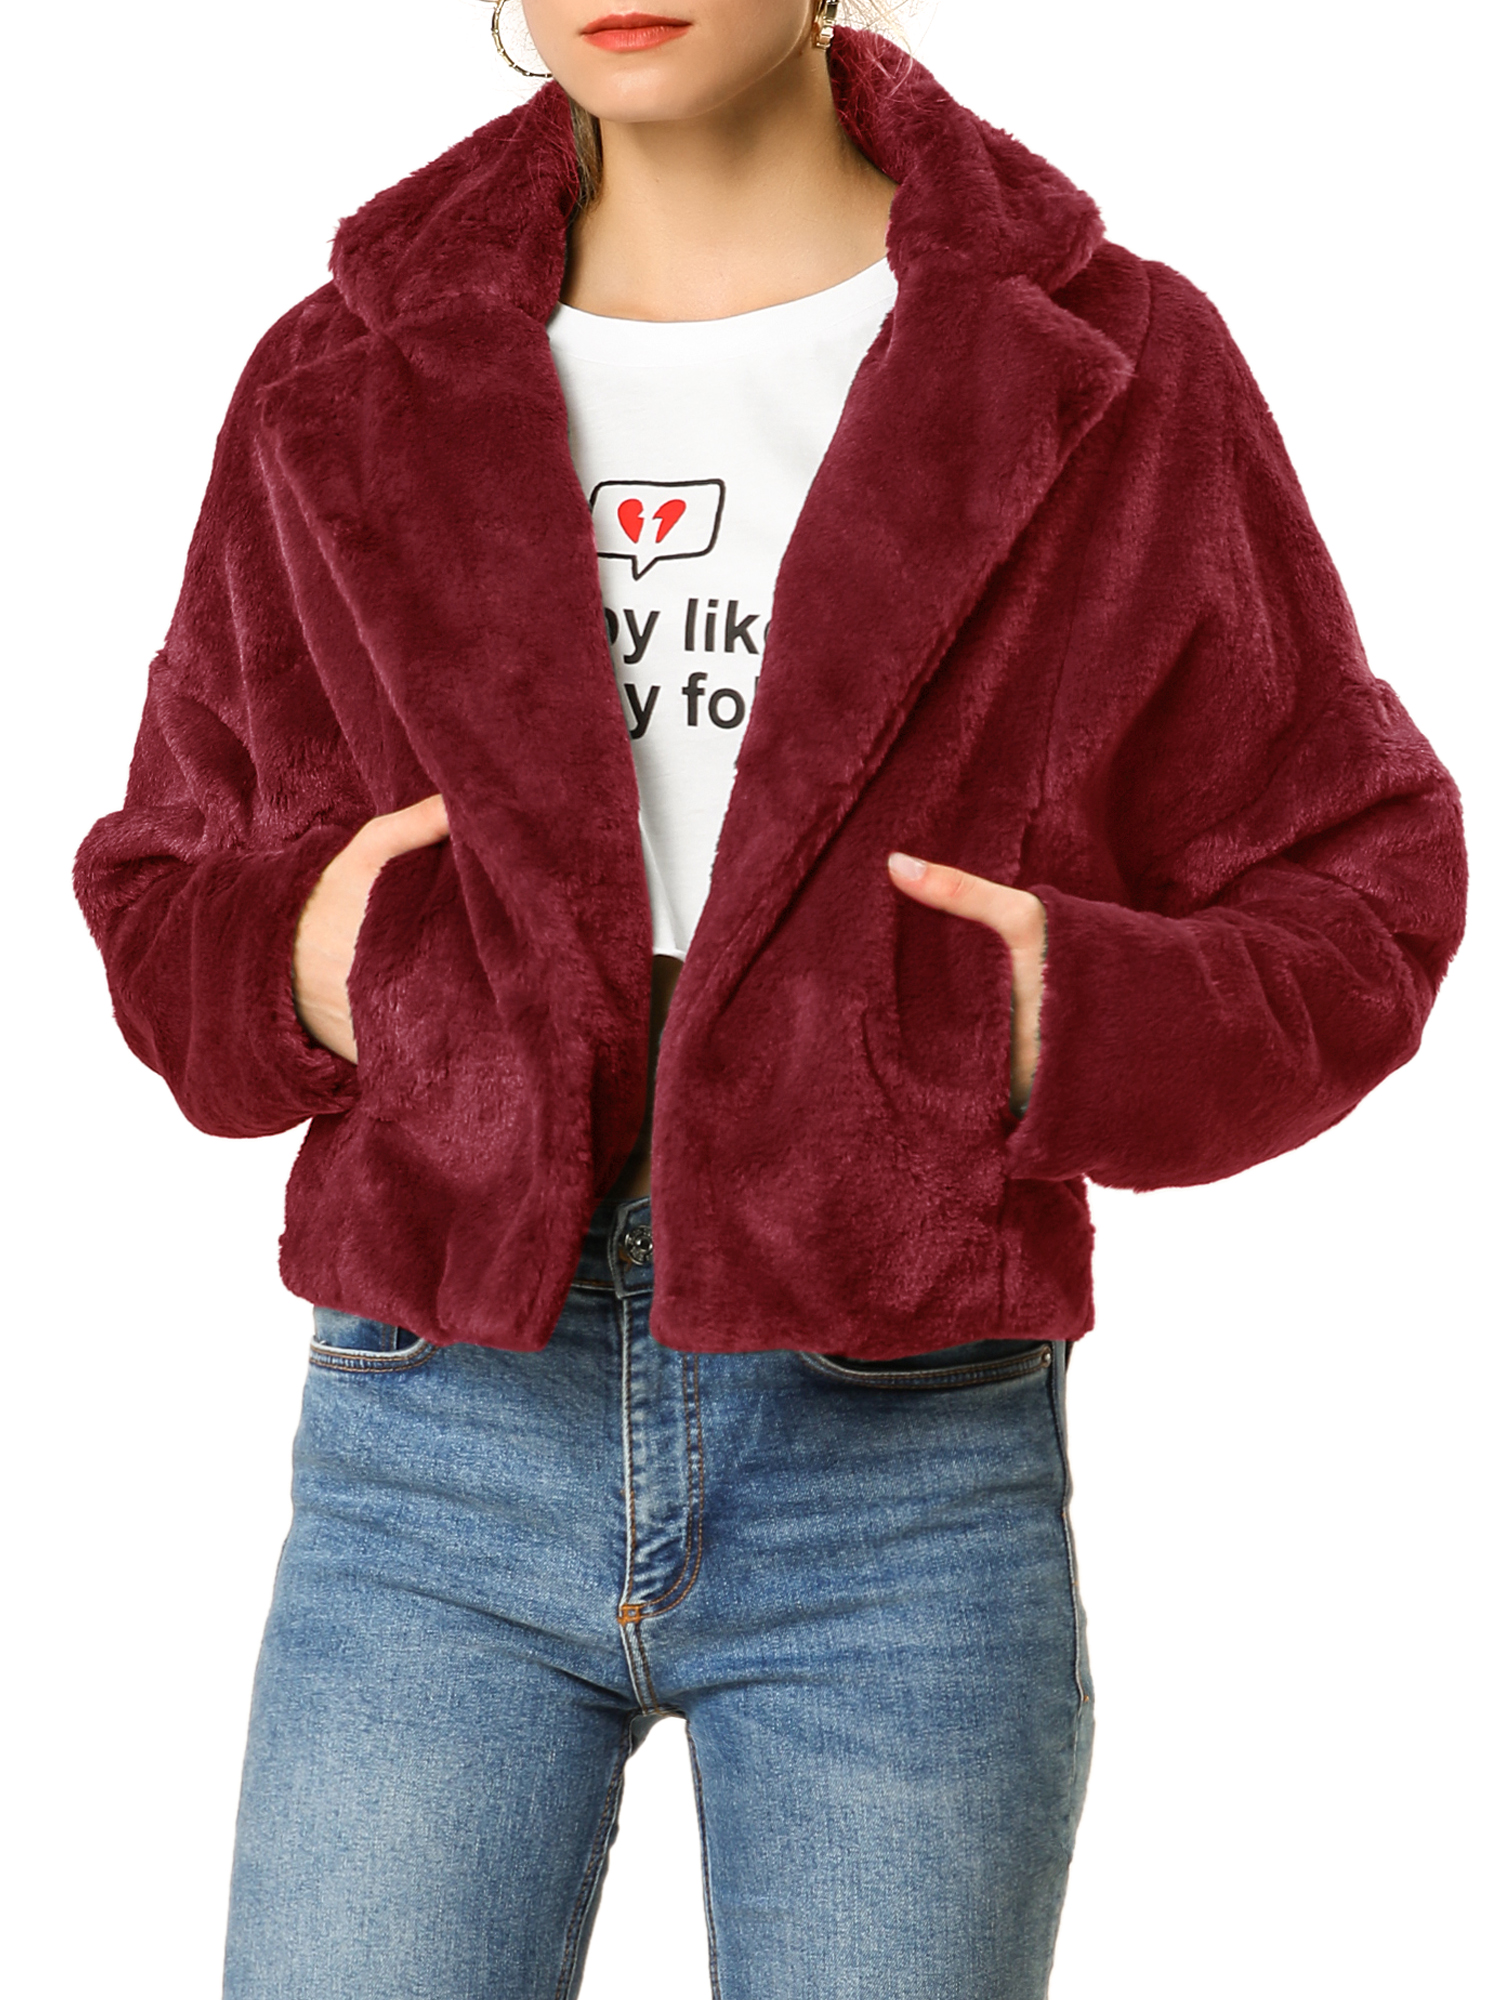 Unique Bargains Women's Cropped Jacket Notch Lapel Faux Fur Fluffy Coat L Burgundy - image 1 of 7